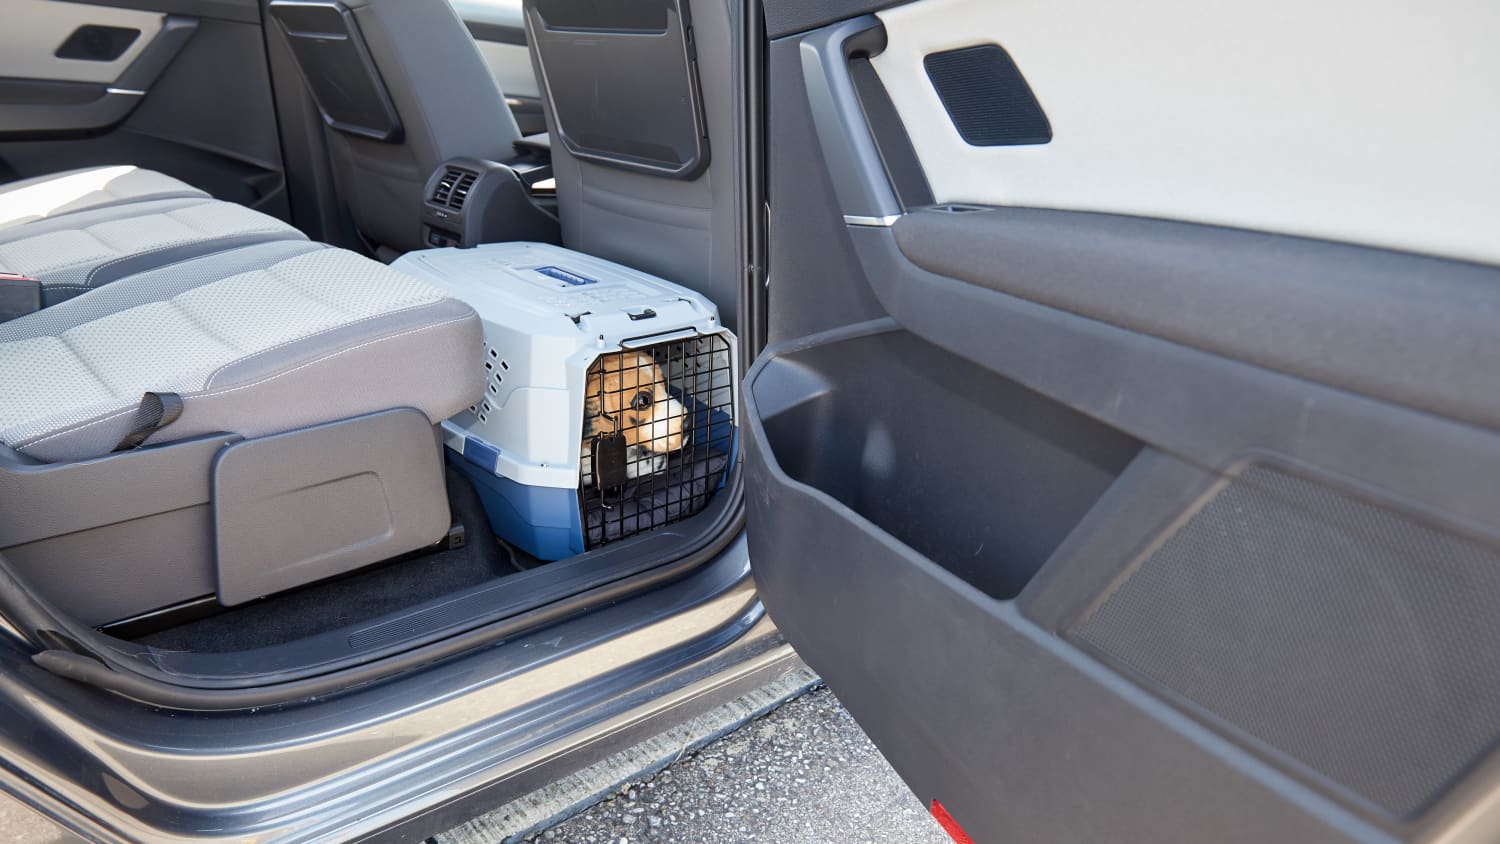 Gurt, Box oder Beifahrersitz?: So transportiert man Hunde sicher im Auto -  Region & Land - Schwarzwälder Bote